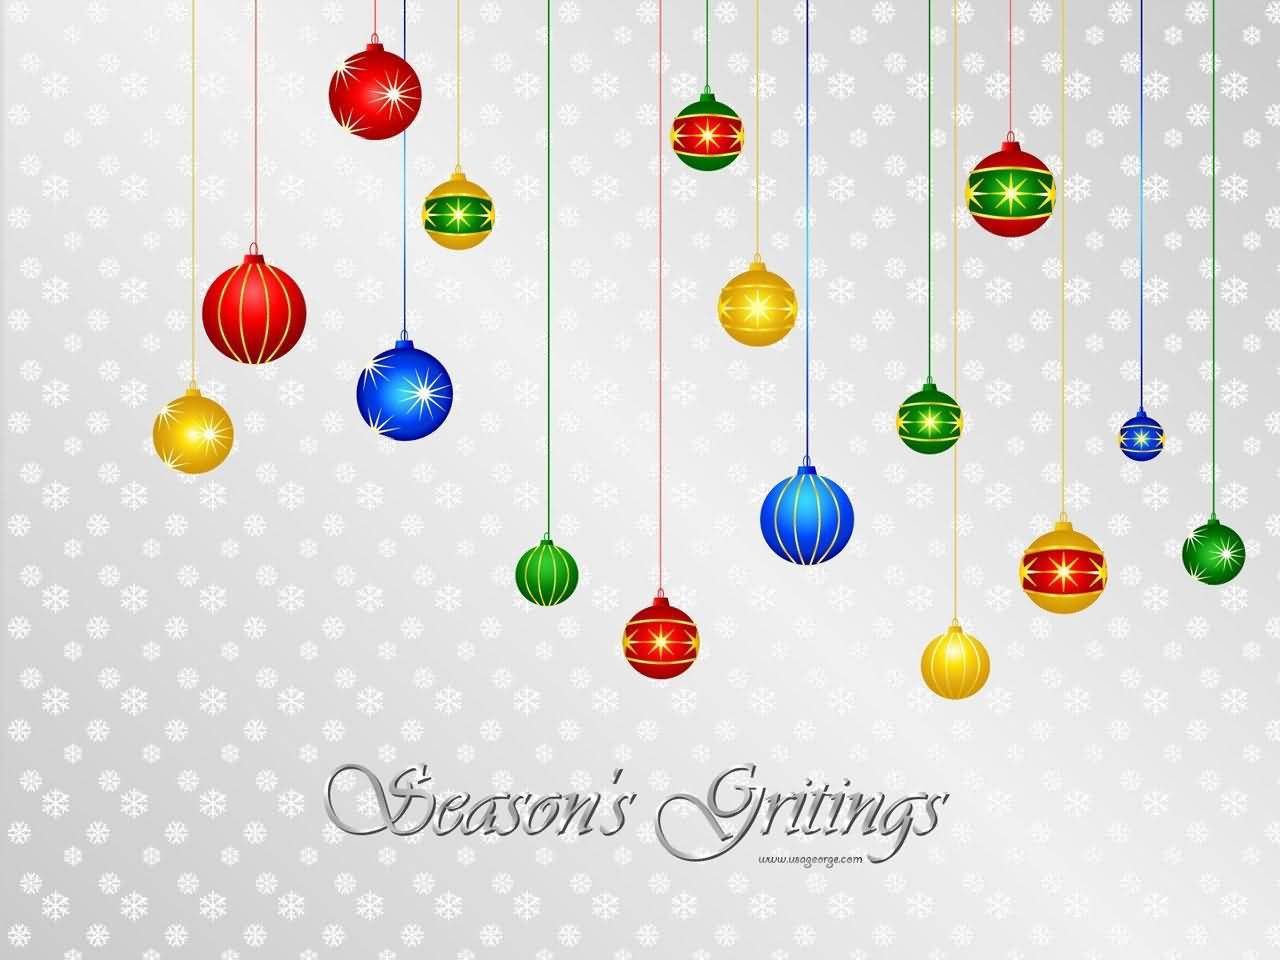 Season's Greetings Colorful Hanging Christmas Balls